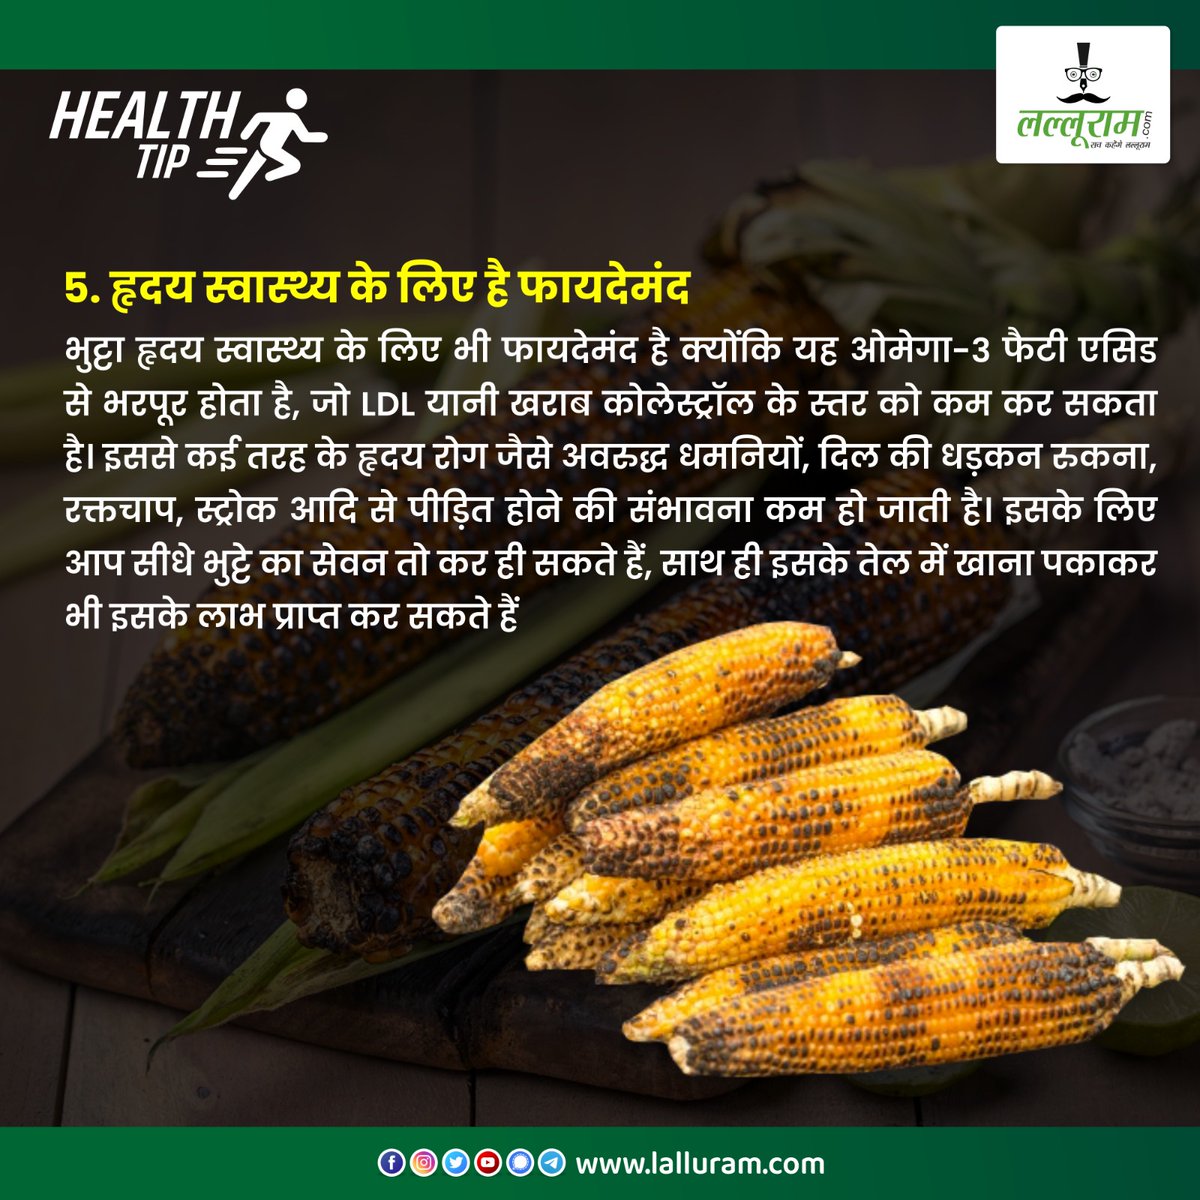 #healthtips #healthbenefits #healrhyfood #corn #monsoon #monsoonspecial #monsoon2023 #rainyseason #lalluram